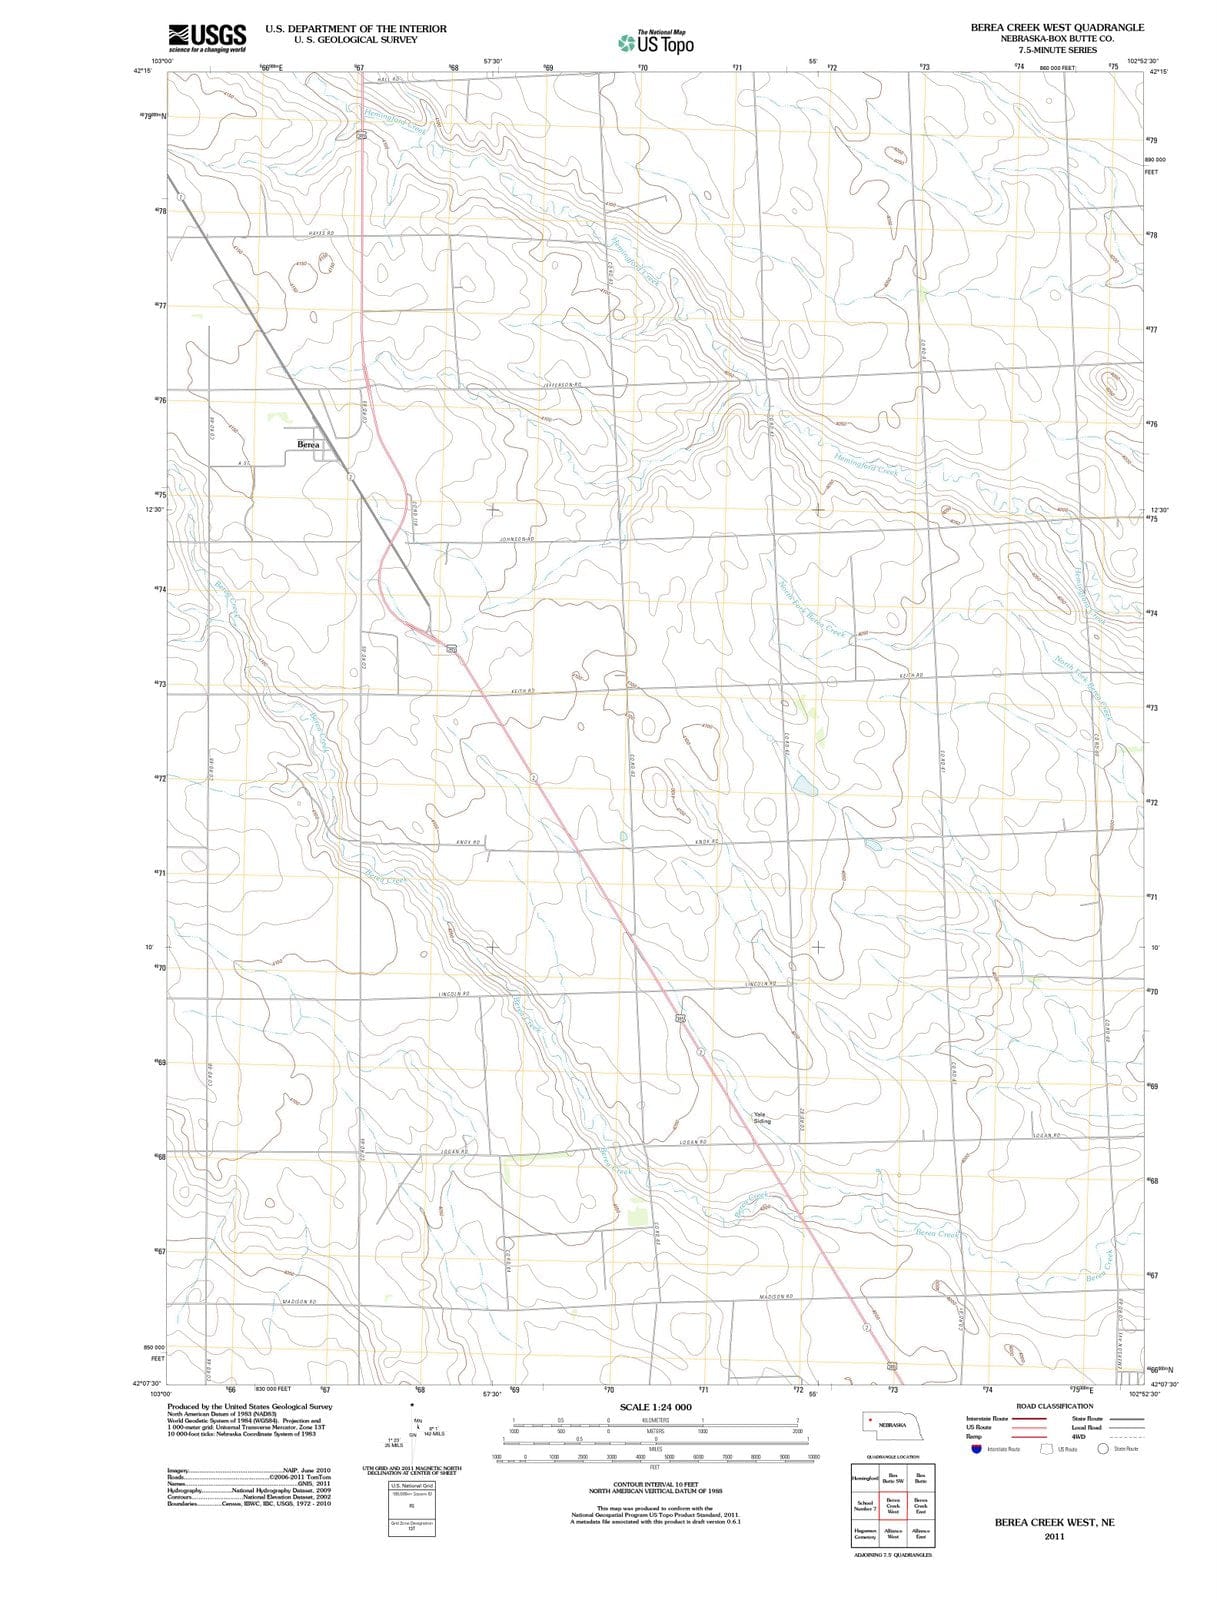 2011 Berea Creek West, NE - Nebraska - USGS Topographic Map